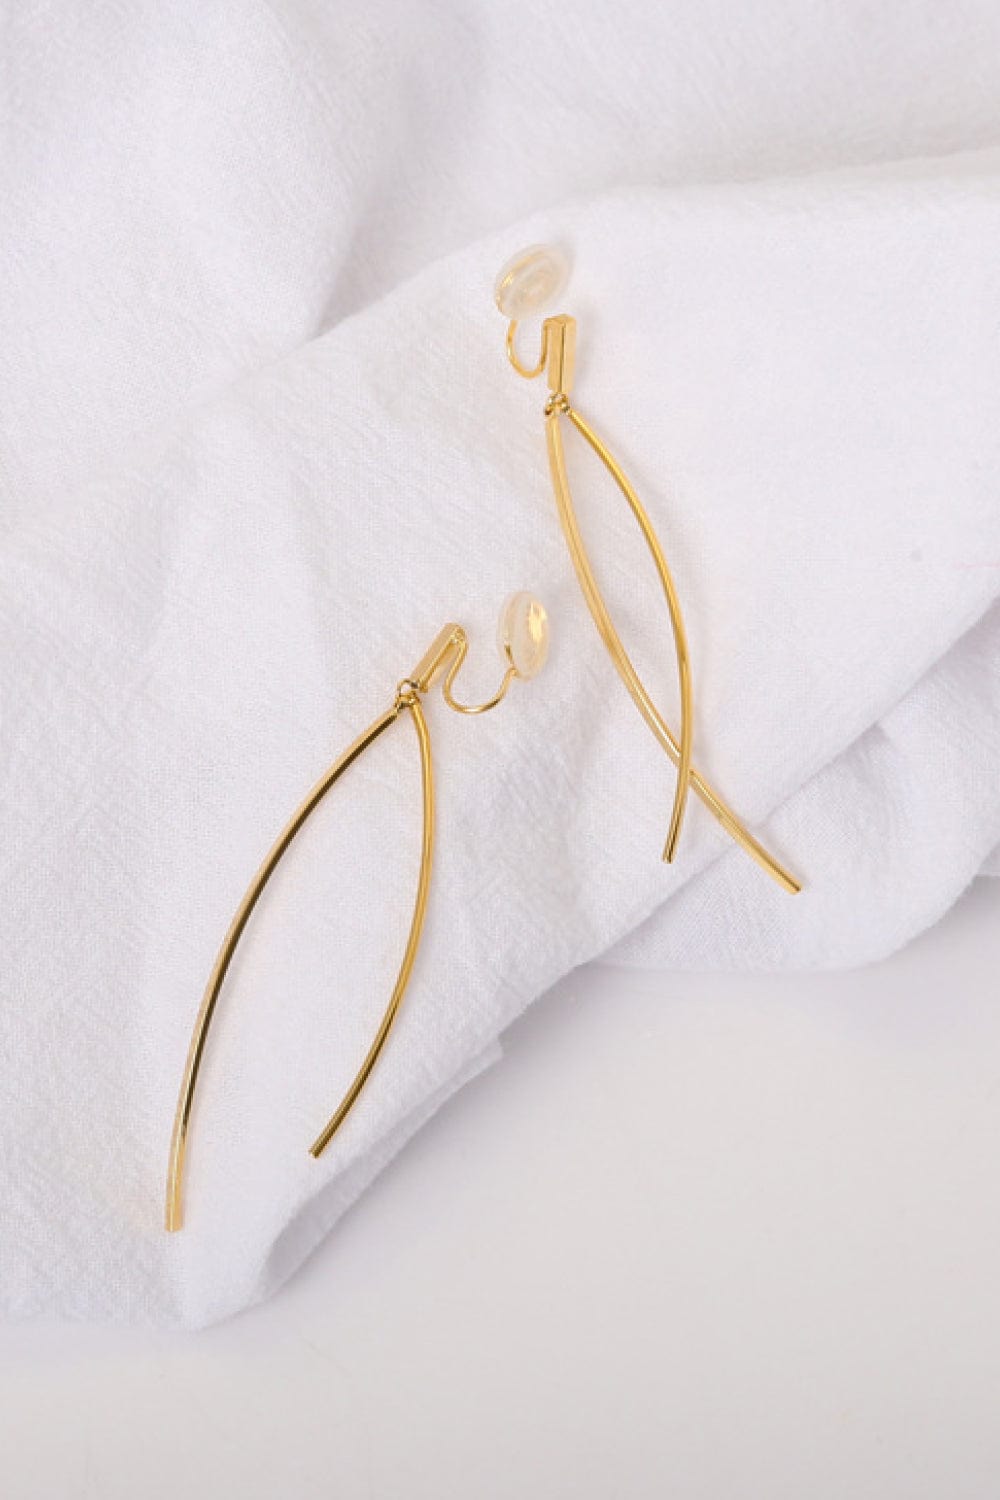 18K Gold Plated Clip-On Earrings - Body By J'ne